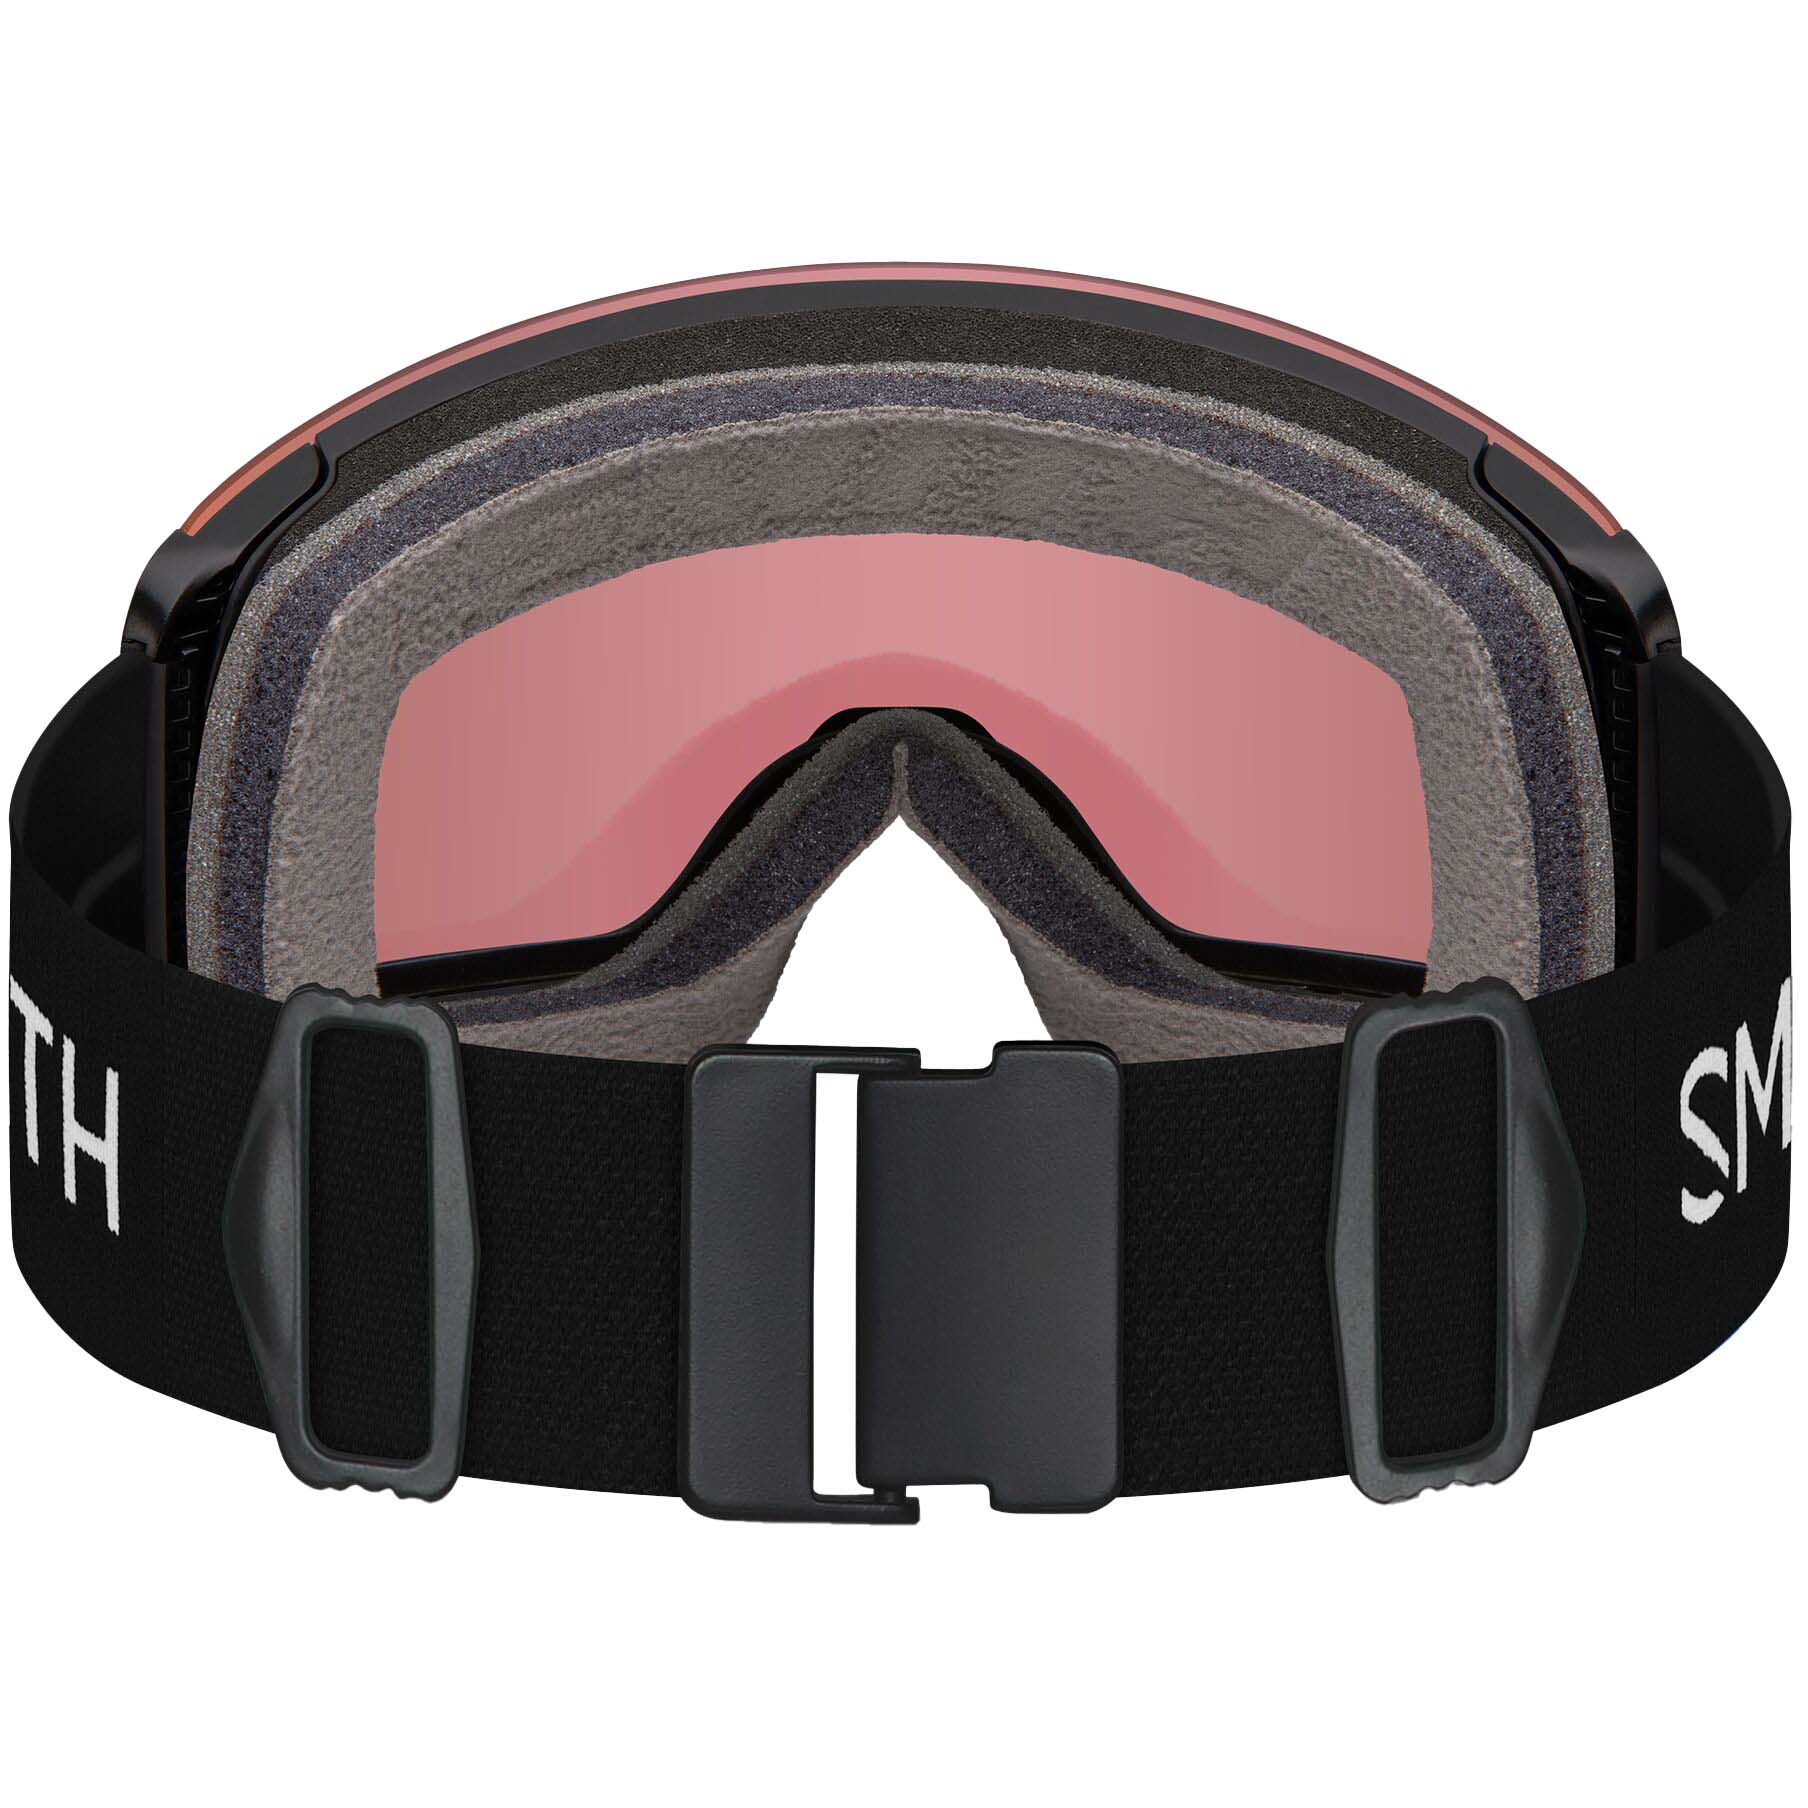 Smith Skyline XL Snowboard/Ski Goggles